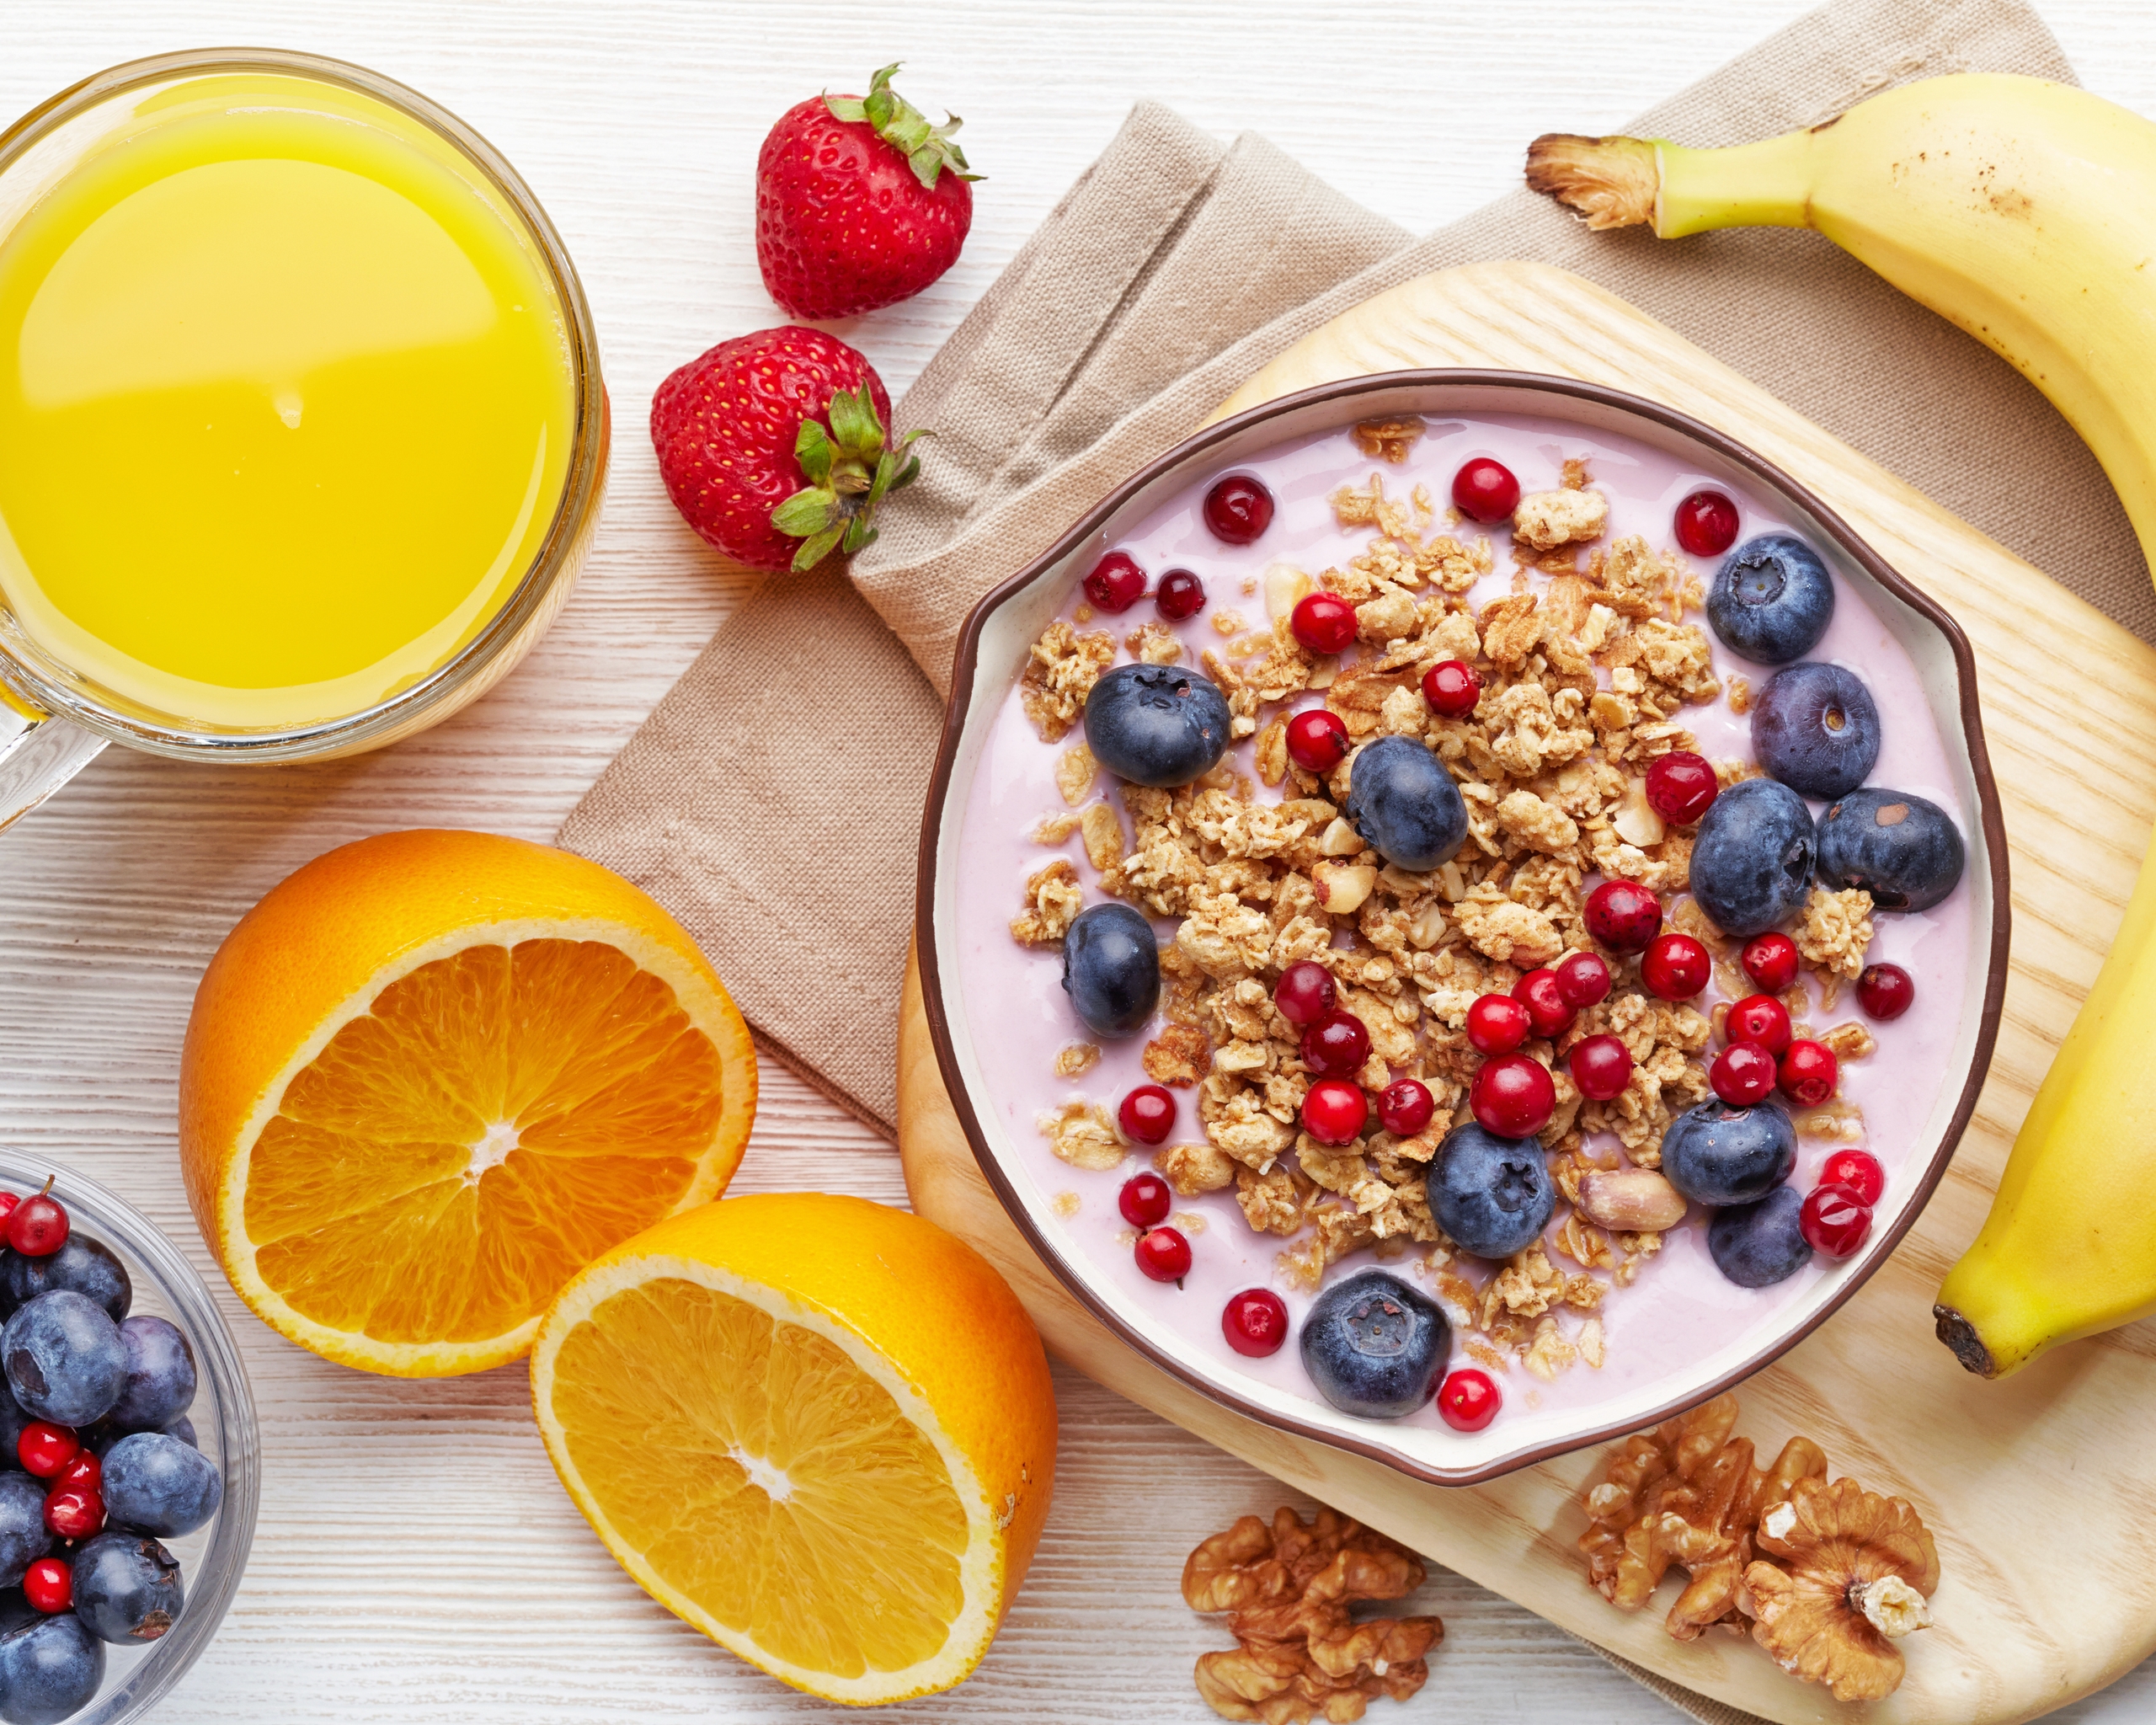 Картинка: Мюсли, злаки, завтрак, банан, цитрус, апельсин, сок, витамины, орехи, ягоды, черника, доска